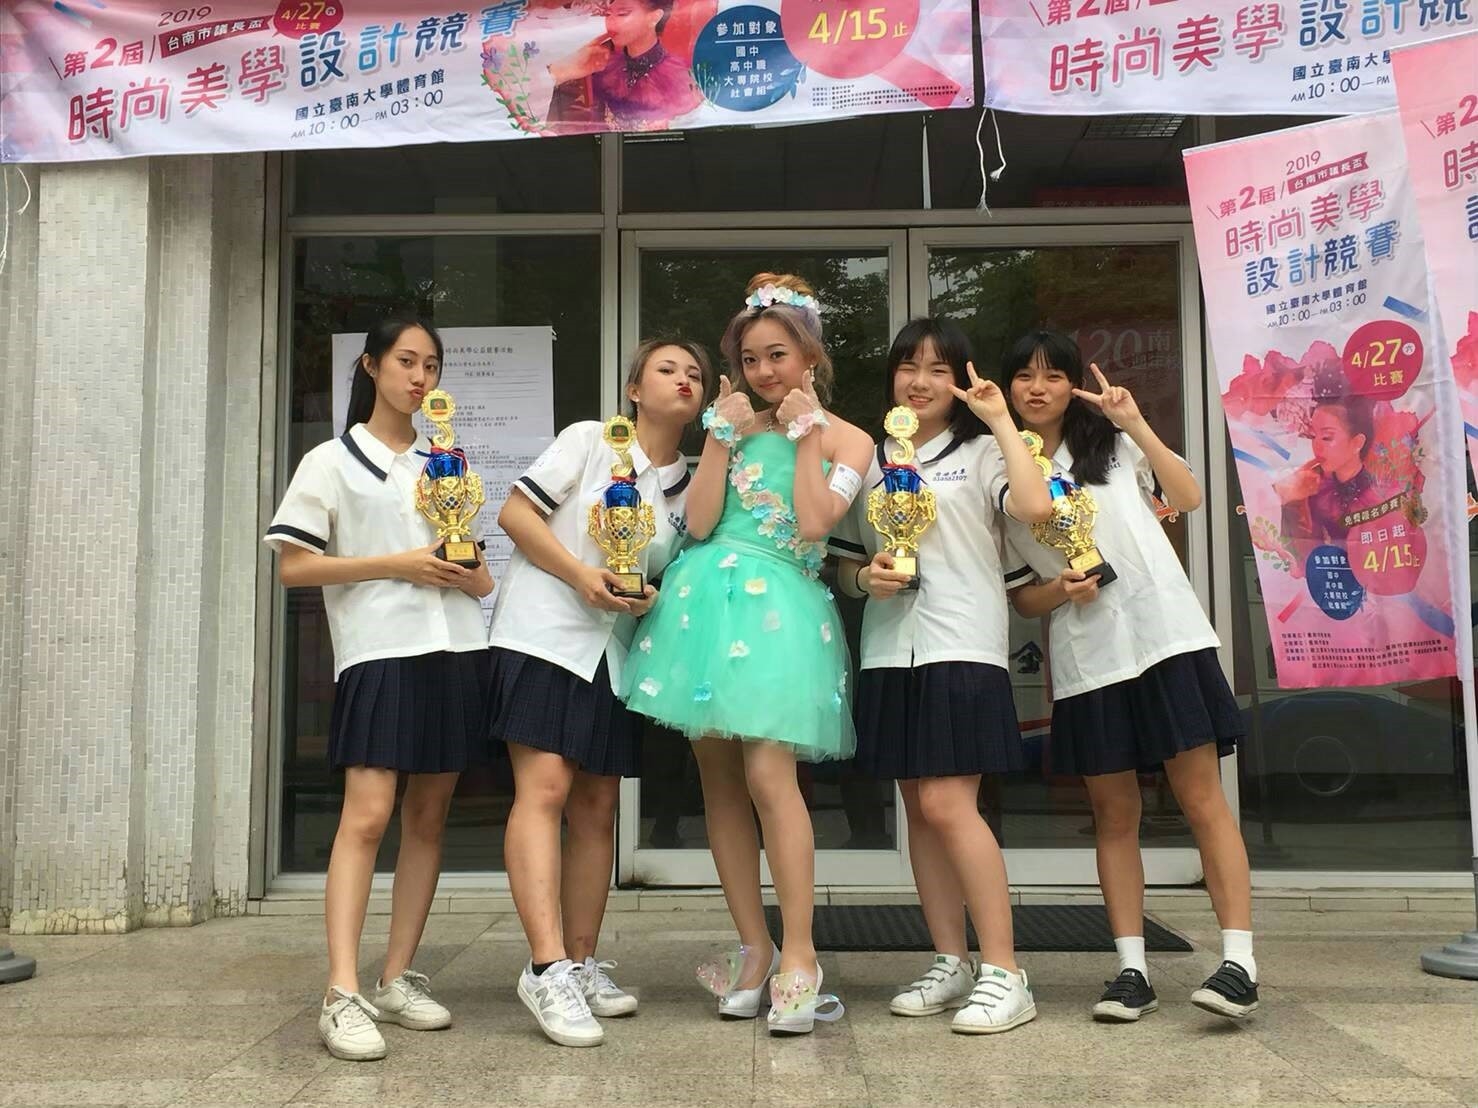 108.4.27本科學生參加「第二屆台南市議長盃時尚美學設計競賽」成績優異